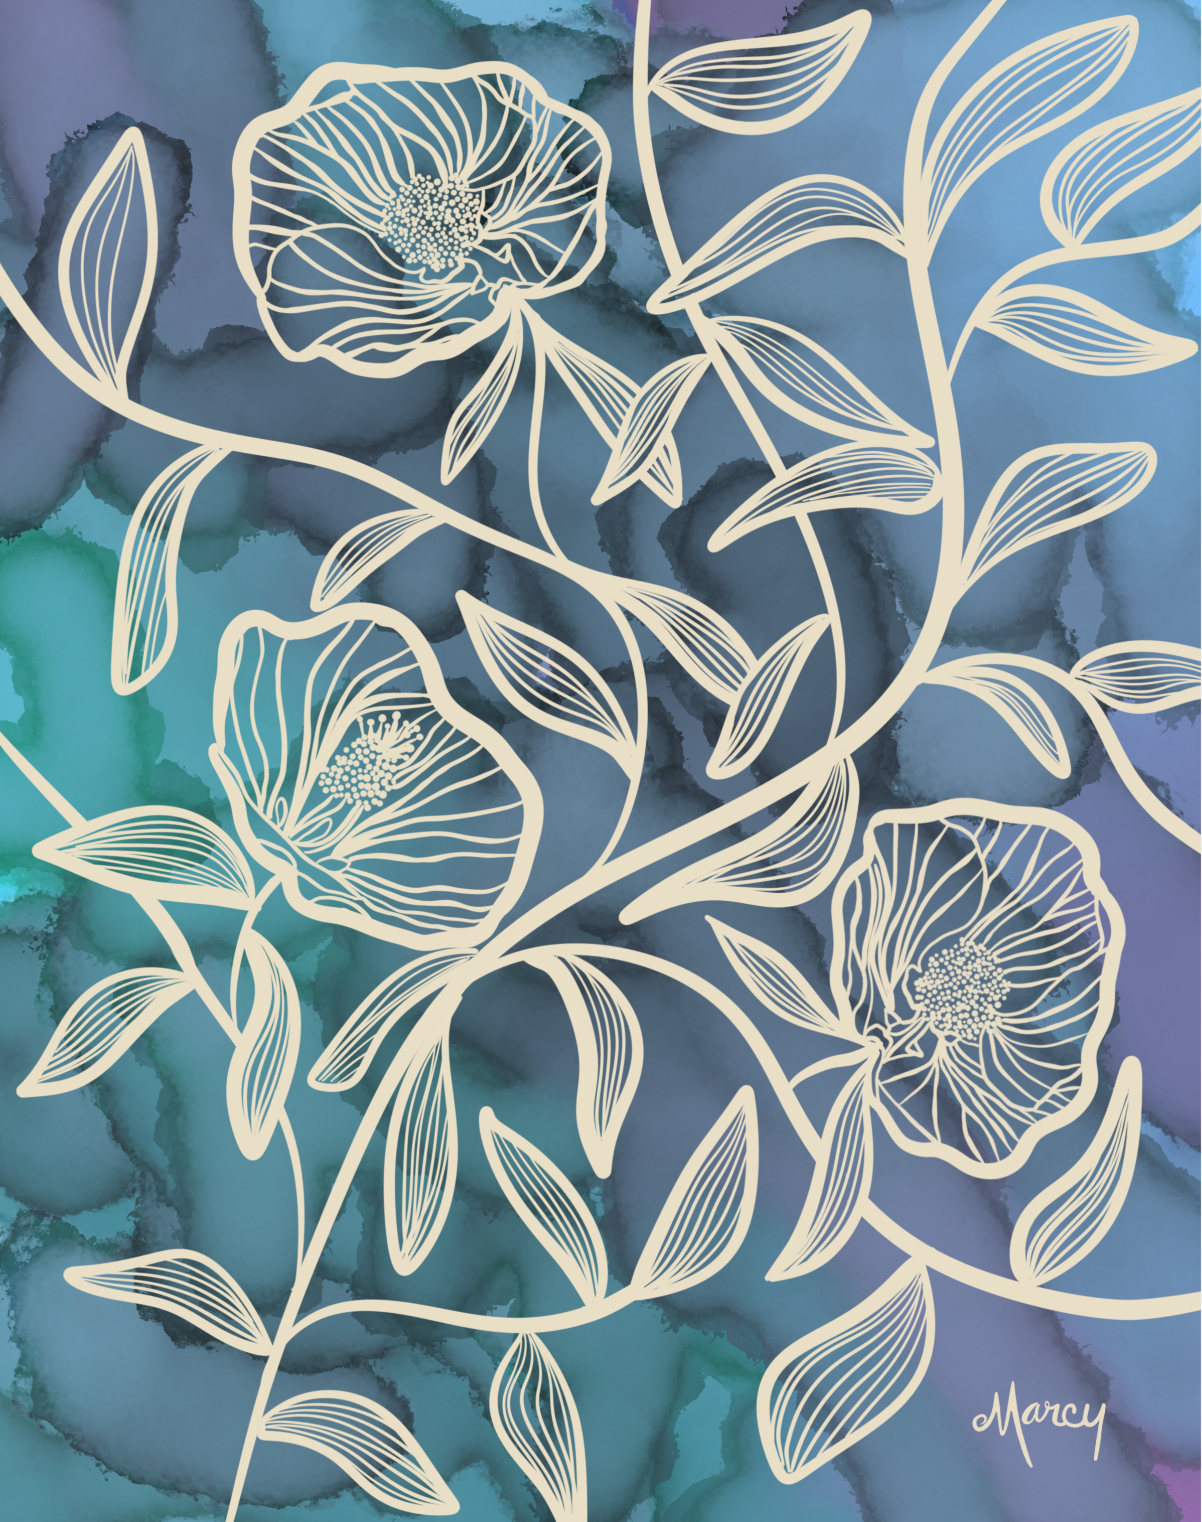 Flowering Maples on Blue Alcohol Ink Background | Digital Illustration | Digital Download